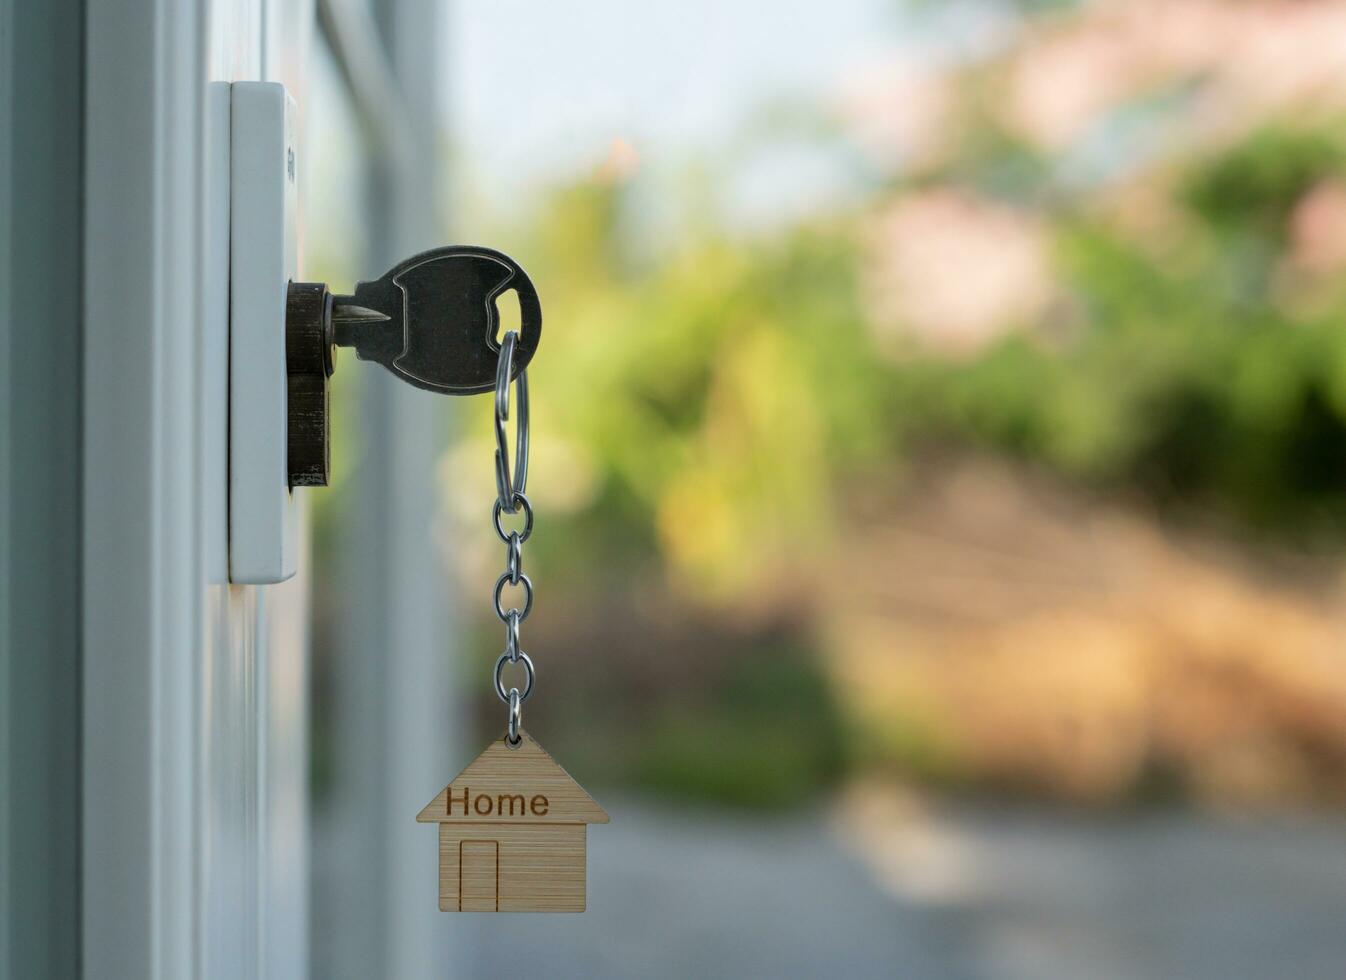 Vermieterschlüssel zum Aufschließen des Hauses steckt in der Tür. Haus aus zweiter Hand zu vermieten und zu verkaufen. Schlüsselbund weht im Wind. hypothek für neues zuhause, kaufen, verkaufen, renovieren, investition, eigentümer, nachlass foto